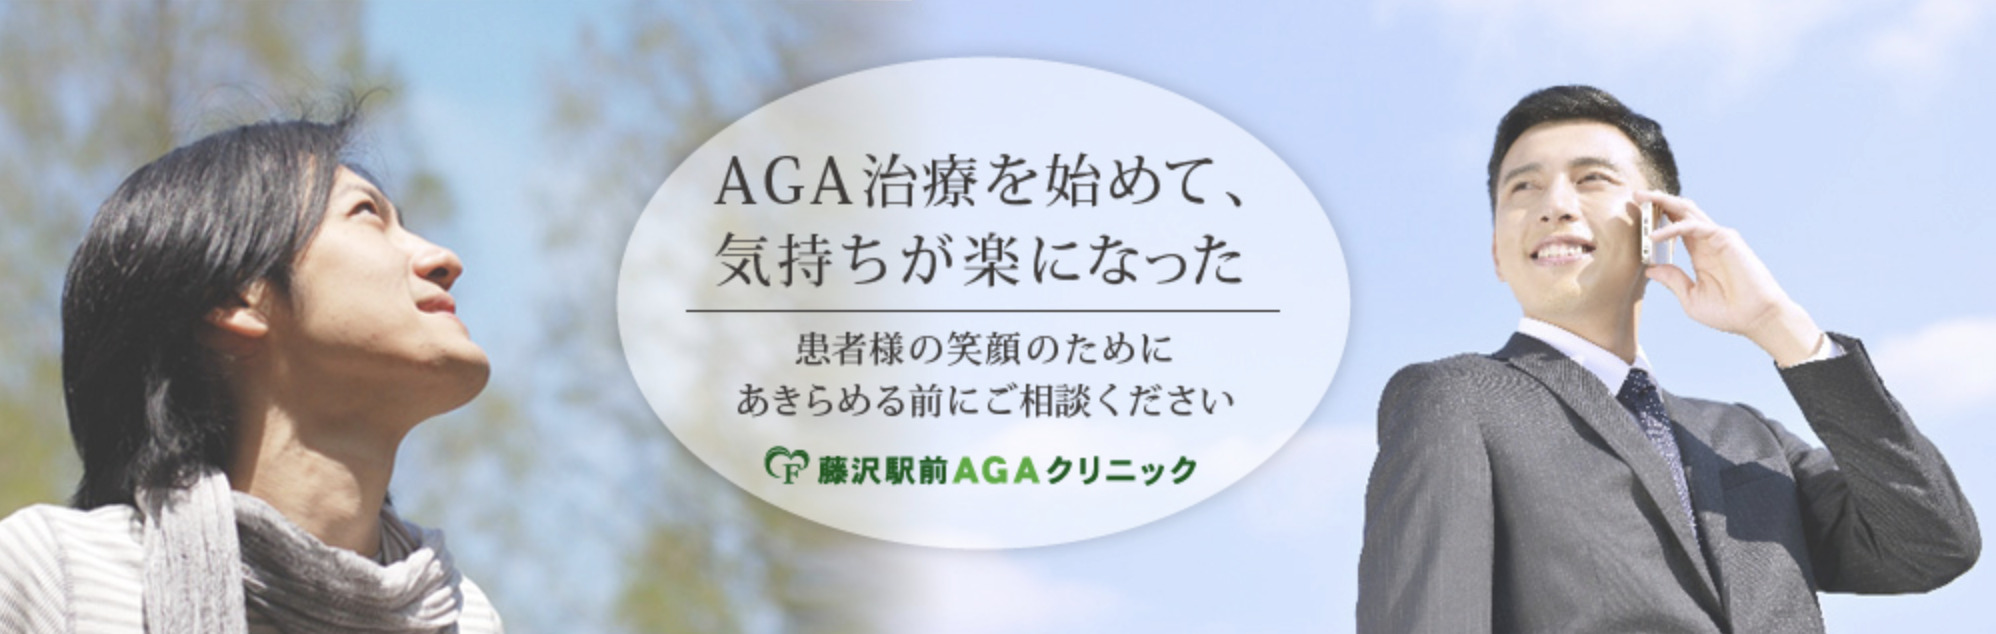 藤沢駅前AGAクリニックのイメージ